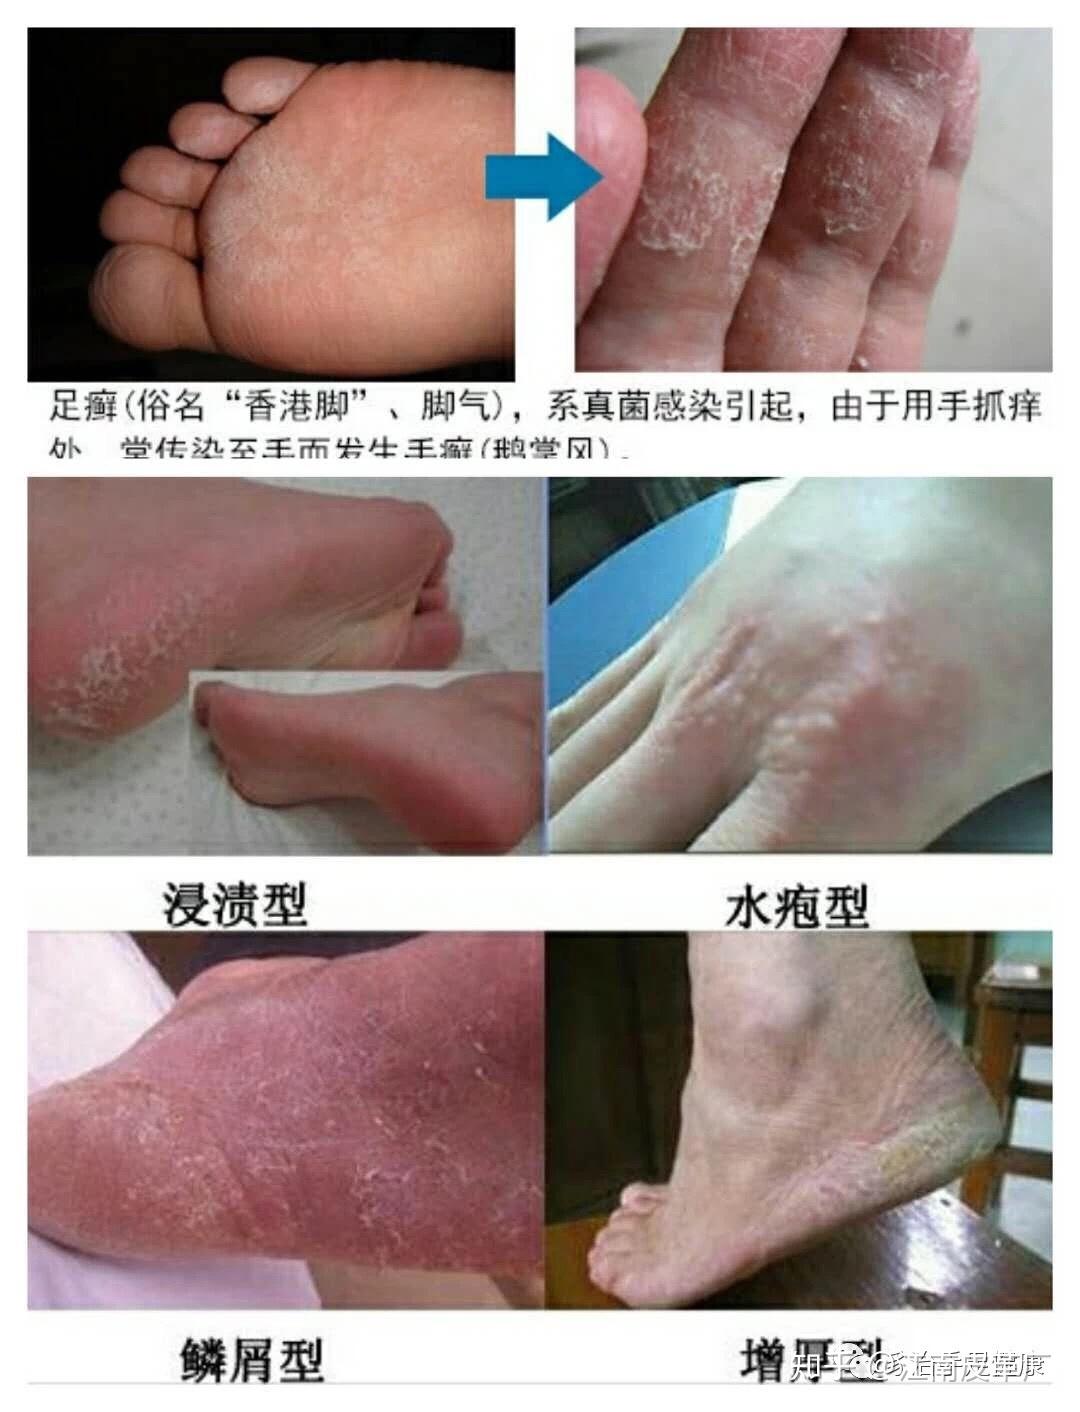 各种脚部问题皮肤病案例对照表